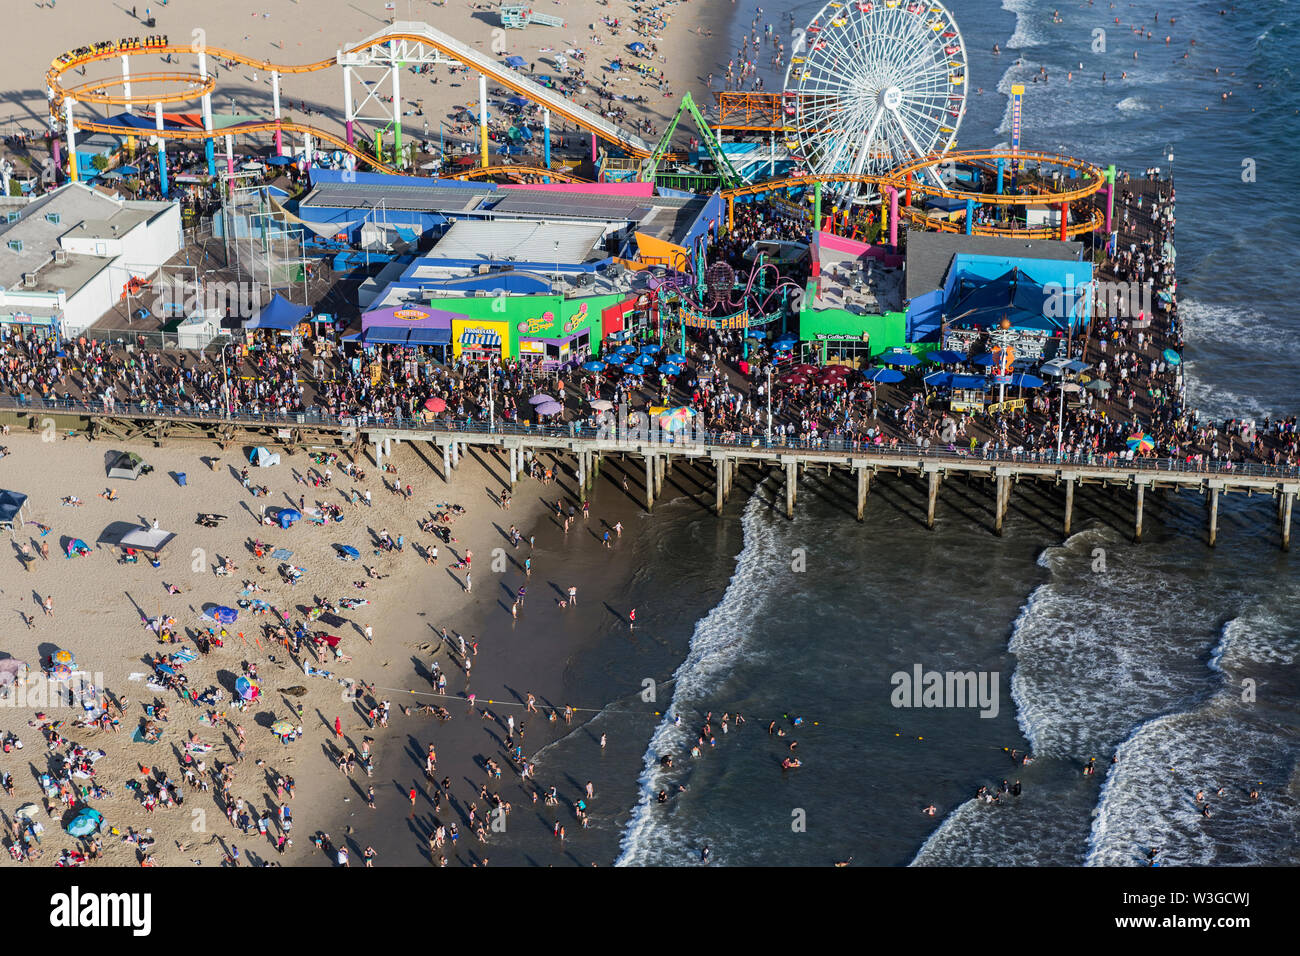 Santa Monica, Californie, USA - 6 août 2016 : Vue aérienne de foules d'été occupée à la populaire plage de Santa Monica Pier et près de Los Angeles. Banque D'Images